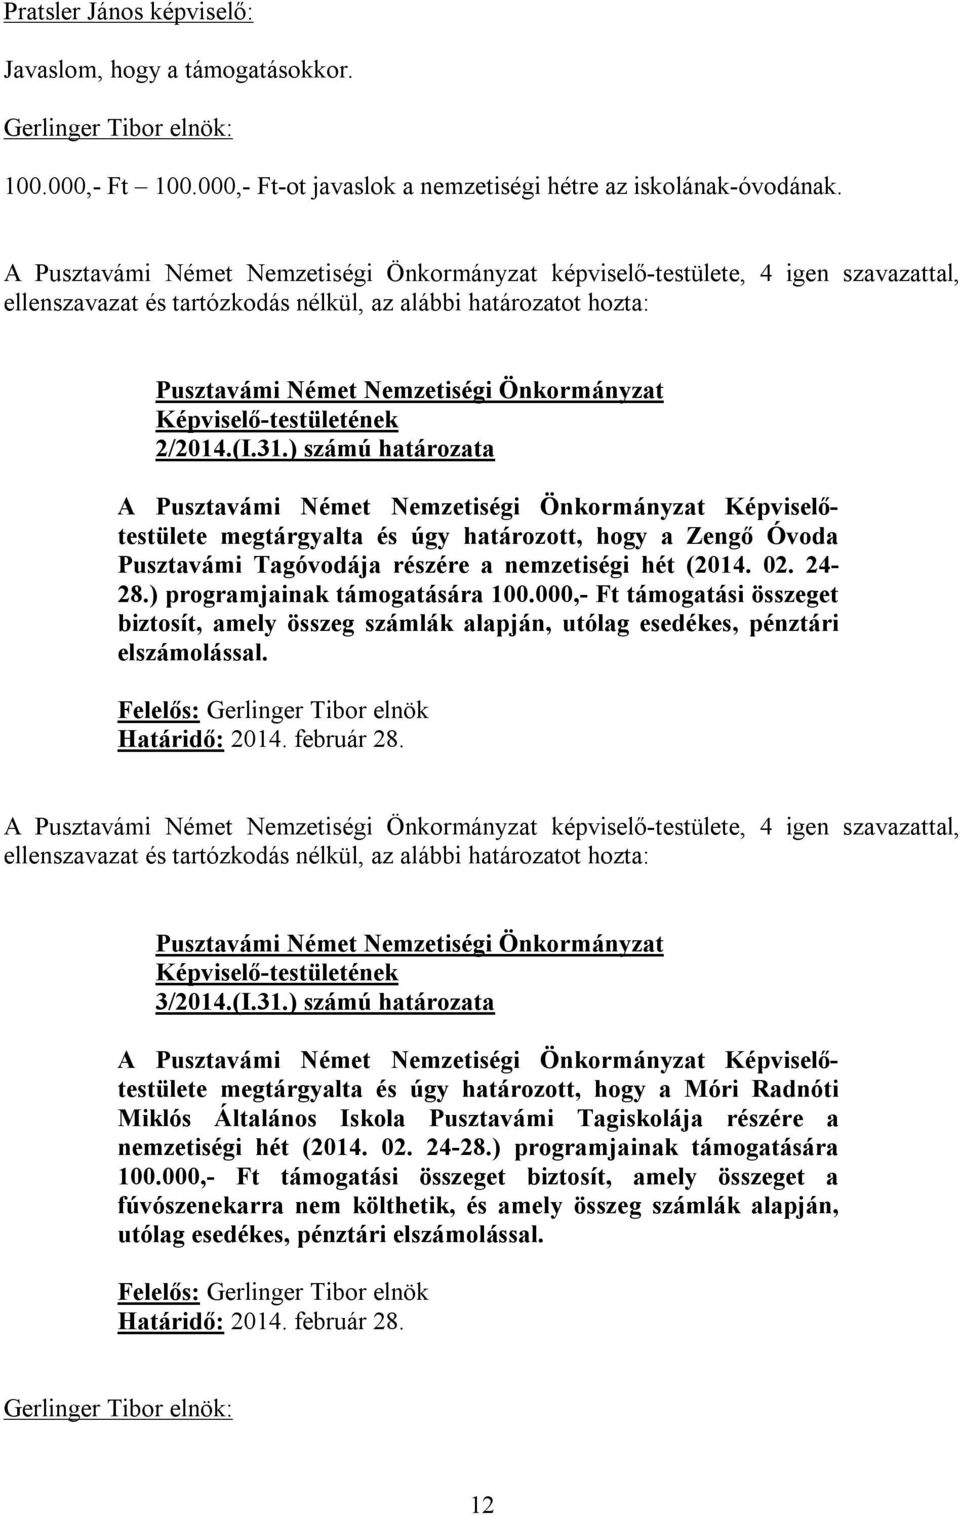 ) számú határozata megtárgyalta és úgy határozott, hogy a Zengő Óvoda Pusztavámi Tagóvodája részére a nemzetiségi hét (2014. 02. 24-28.) programjainak támogatására 100.